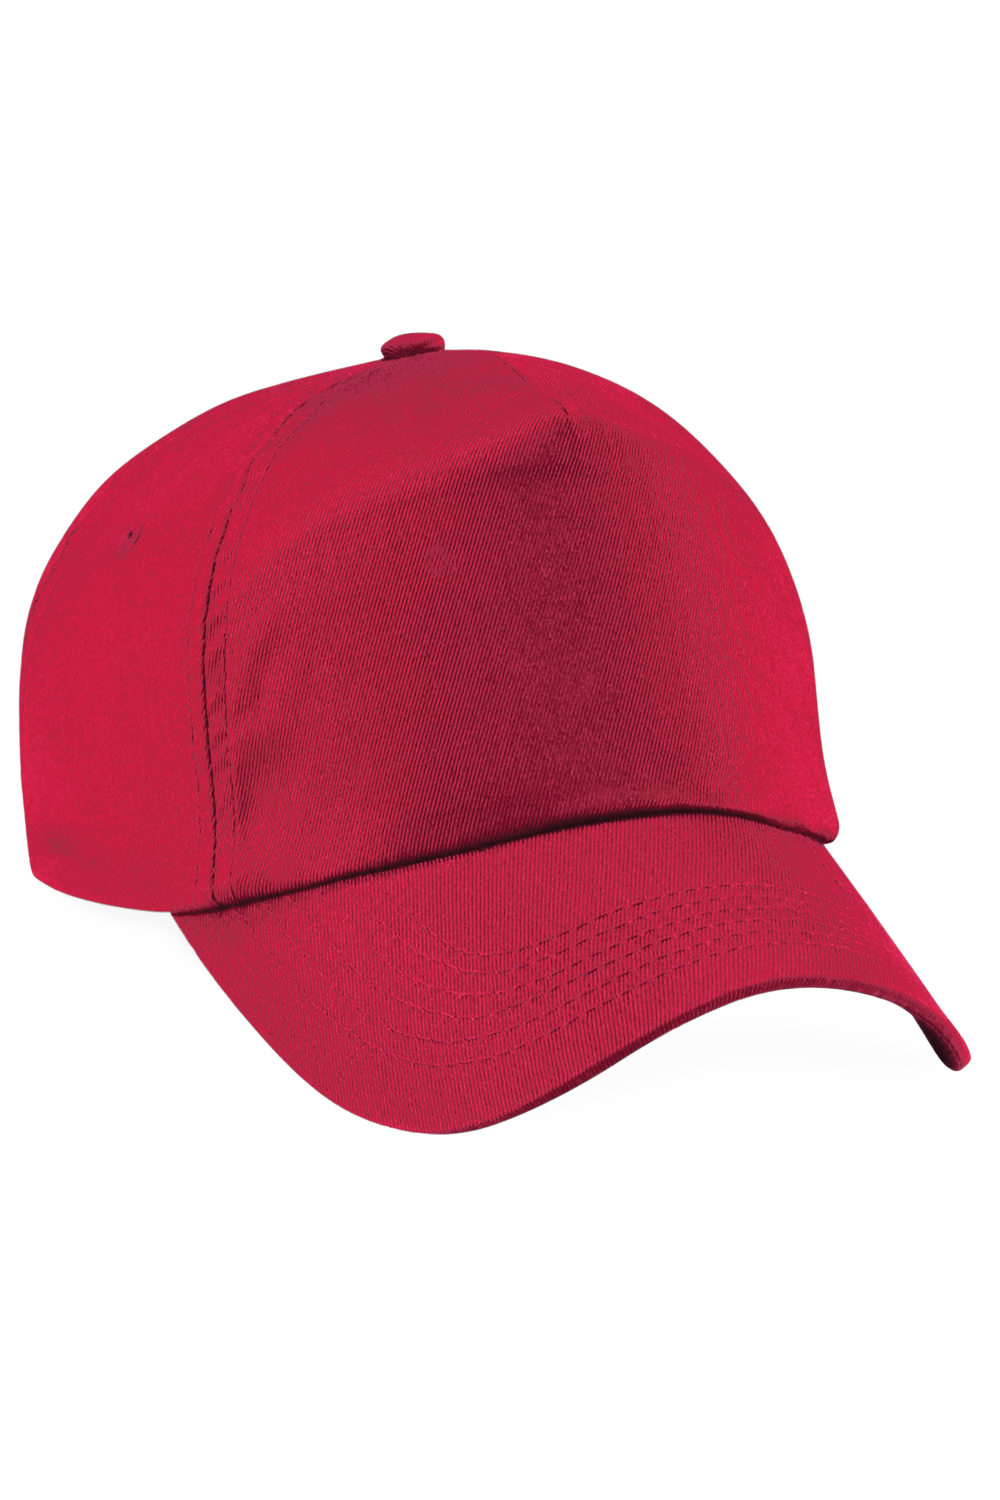 Unisex Plain Original 5 Panel Baseball Cap - Classic Red